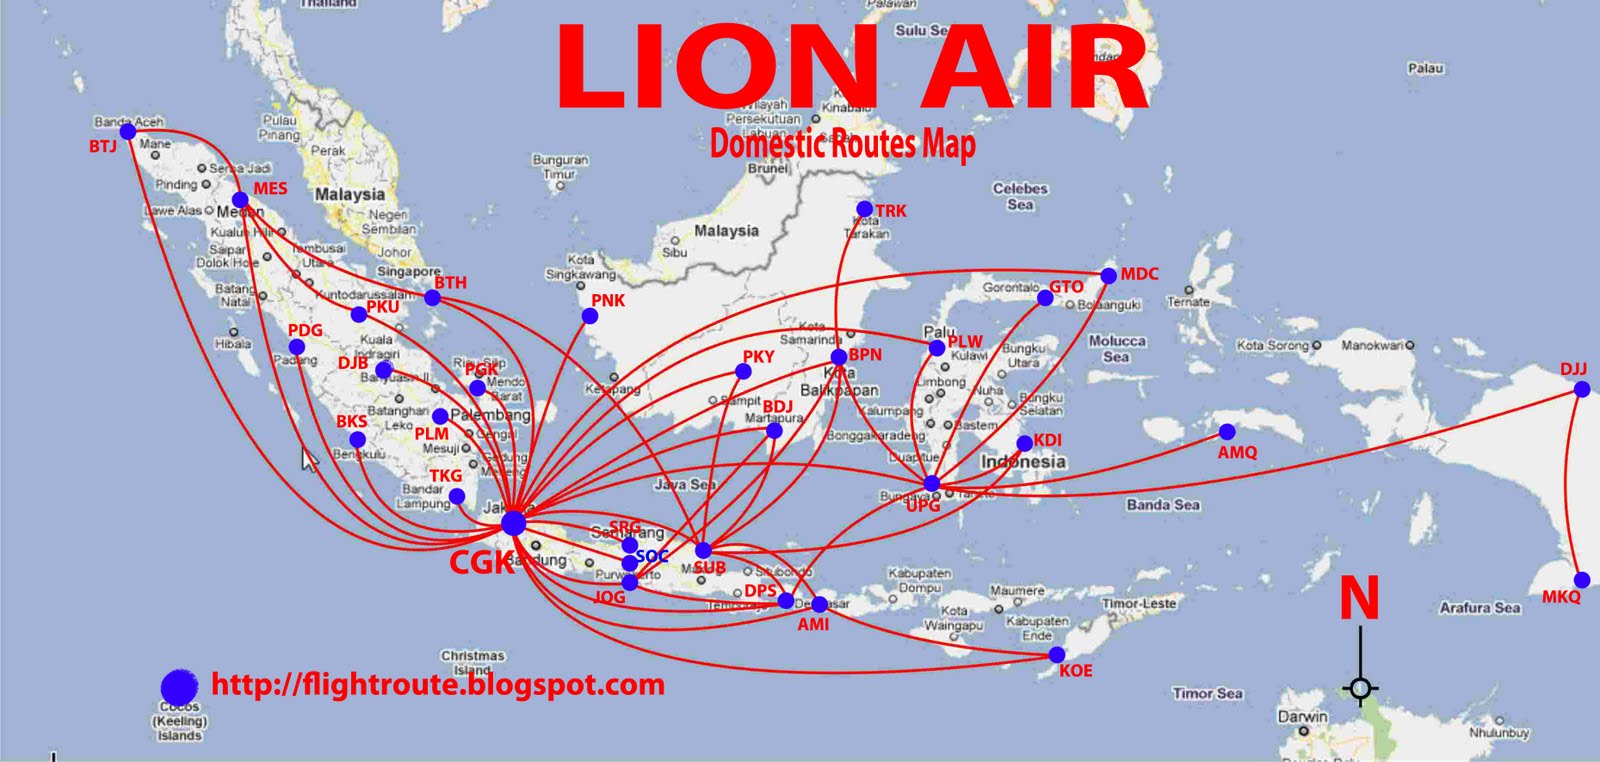 routes map: Lion Air routes map